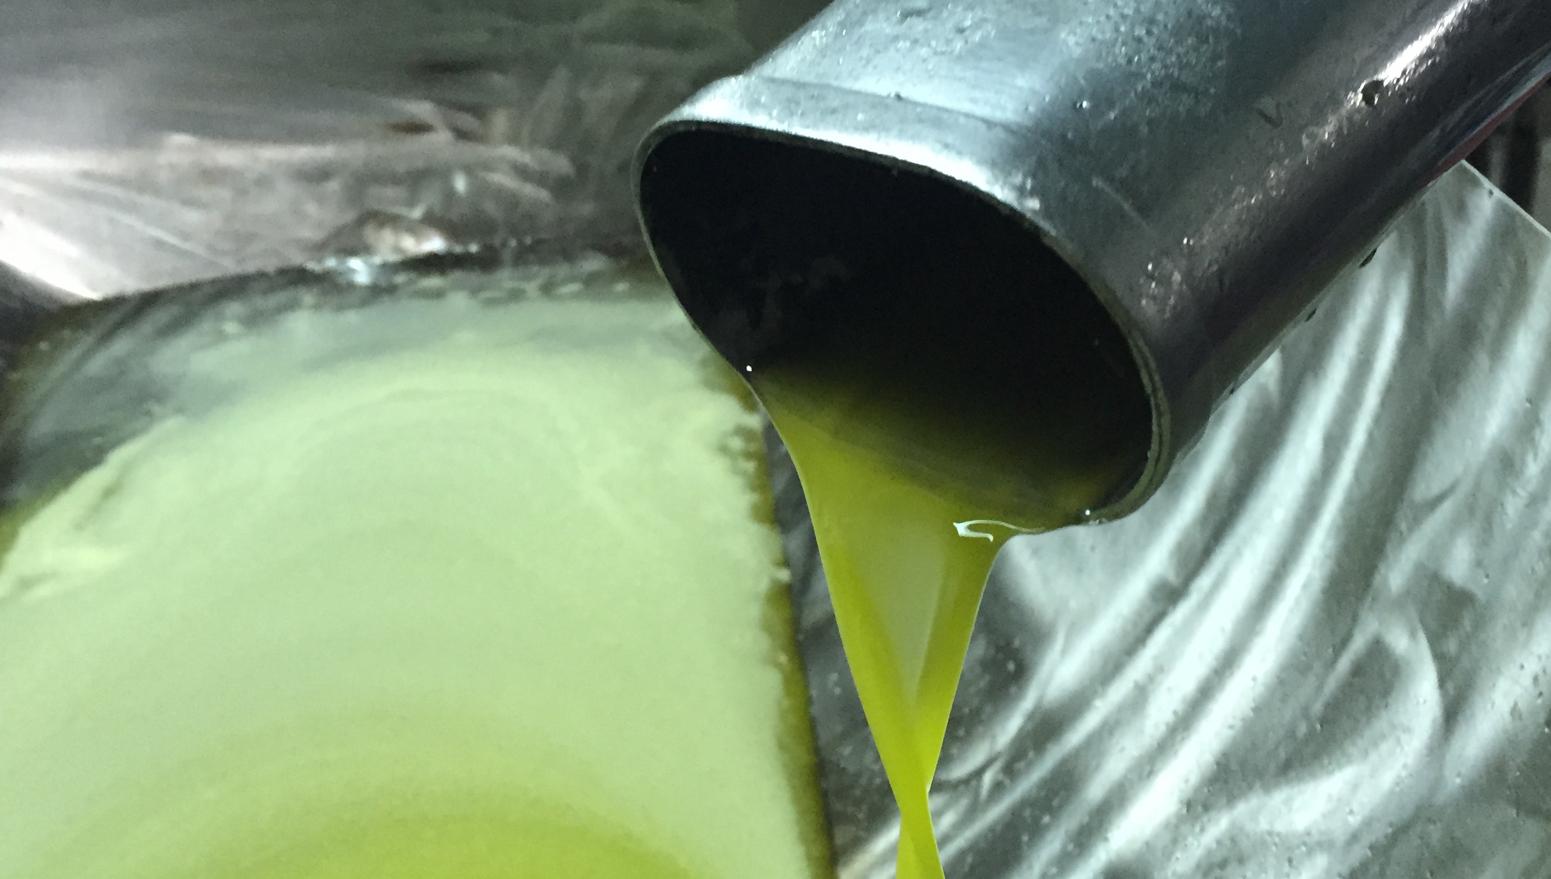 Olivenöl extra vergine